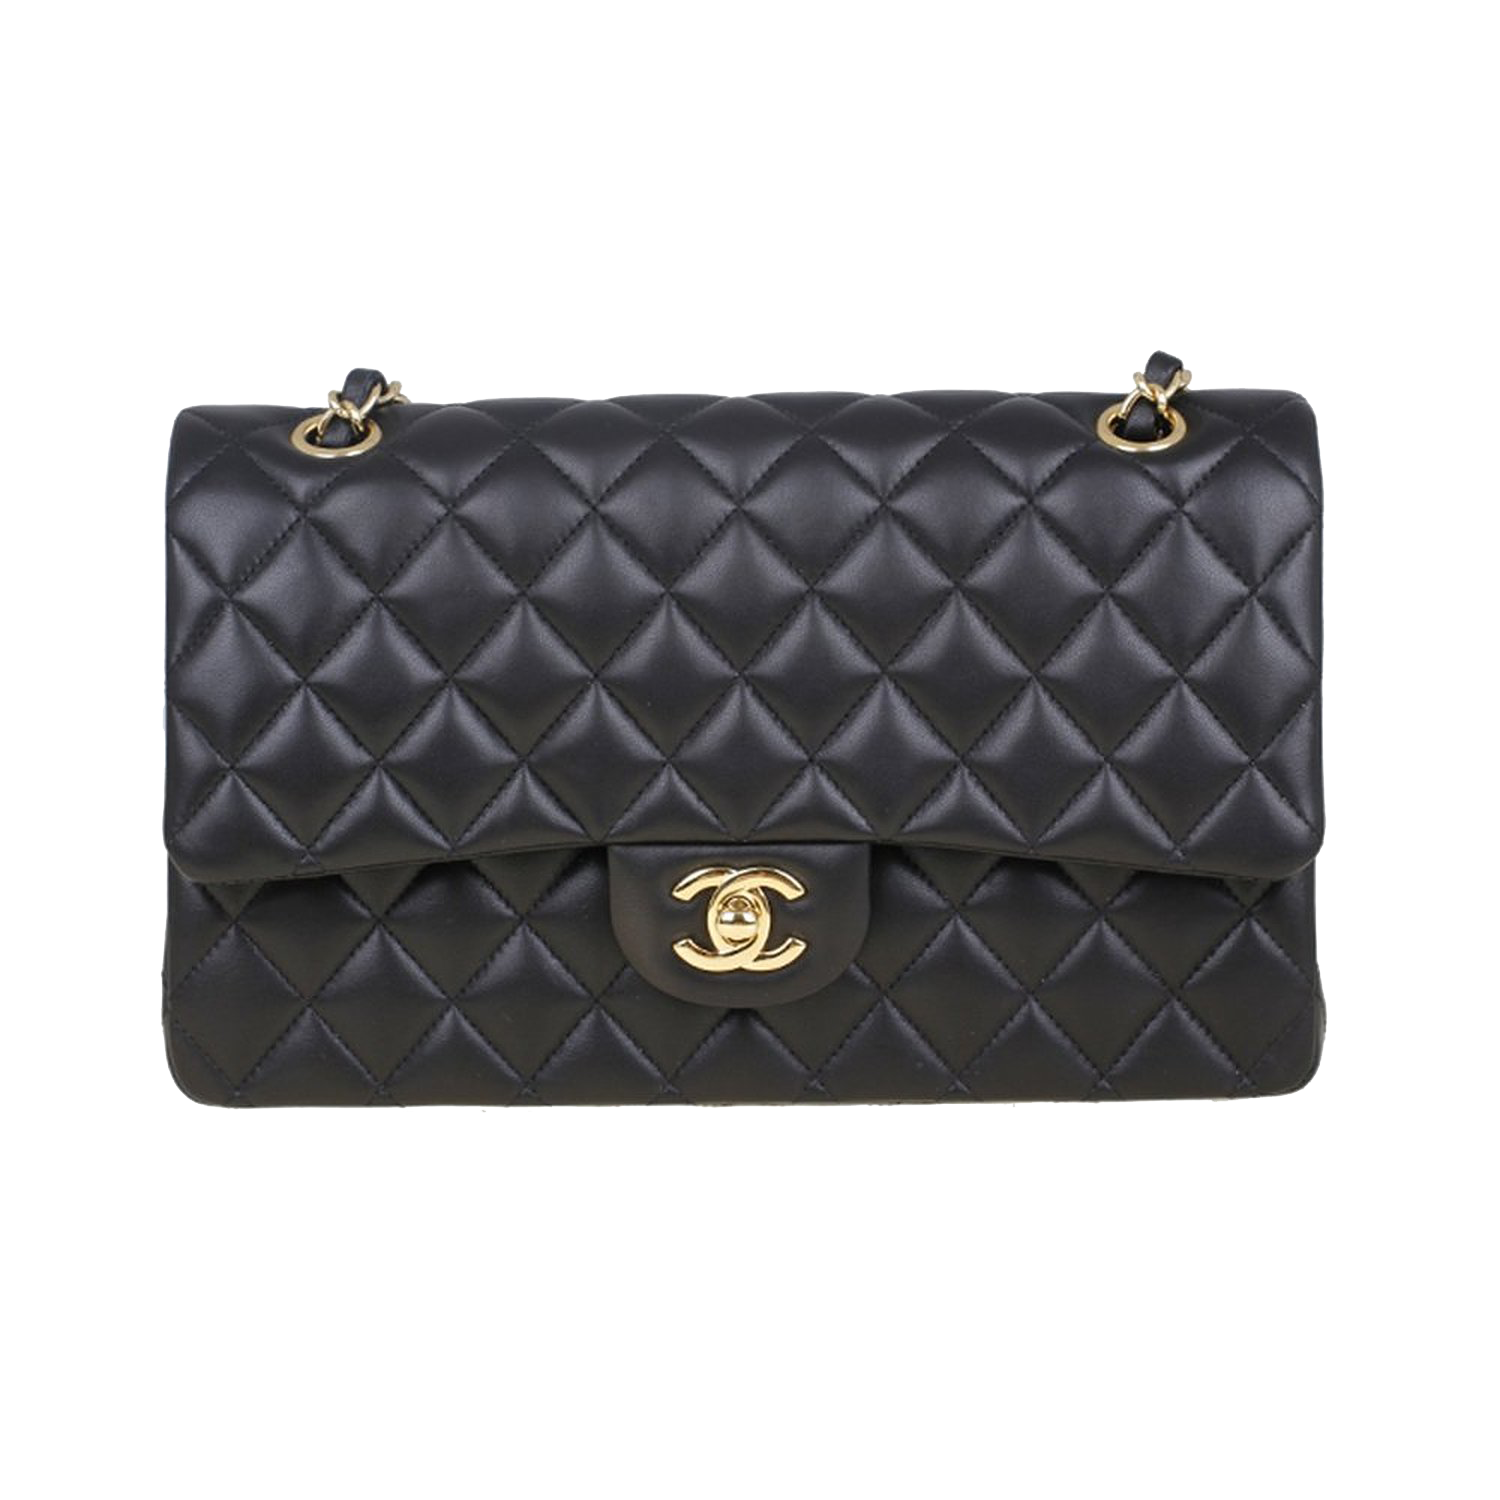 Fashion Bag Moschino Black Handbag Lingge Chanel PNG Image